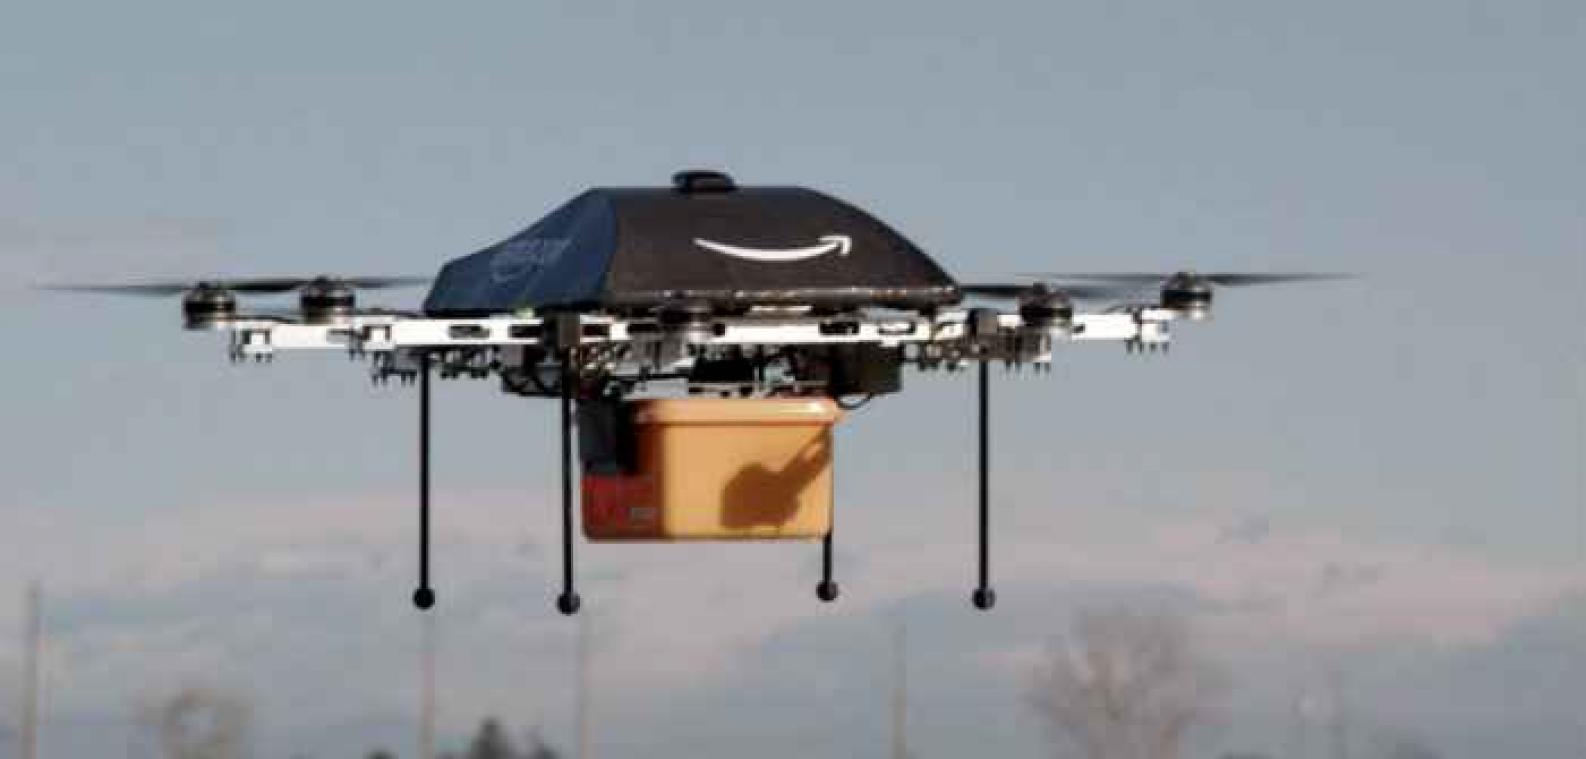 Etats-Unis: Amazon veut commencer à tester ses drones de livraison